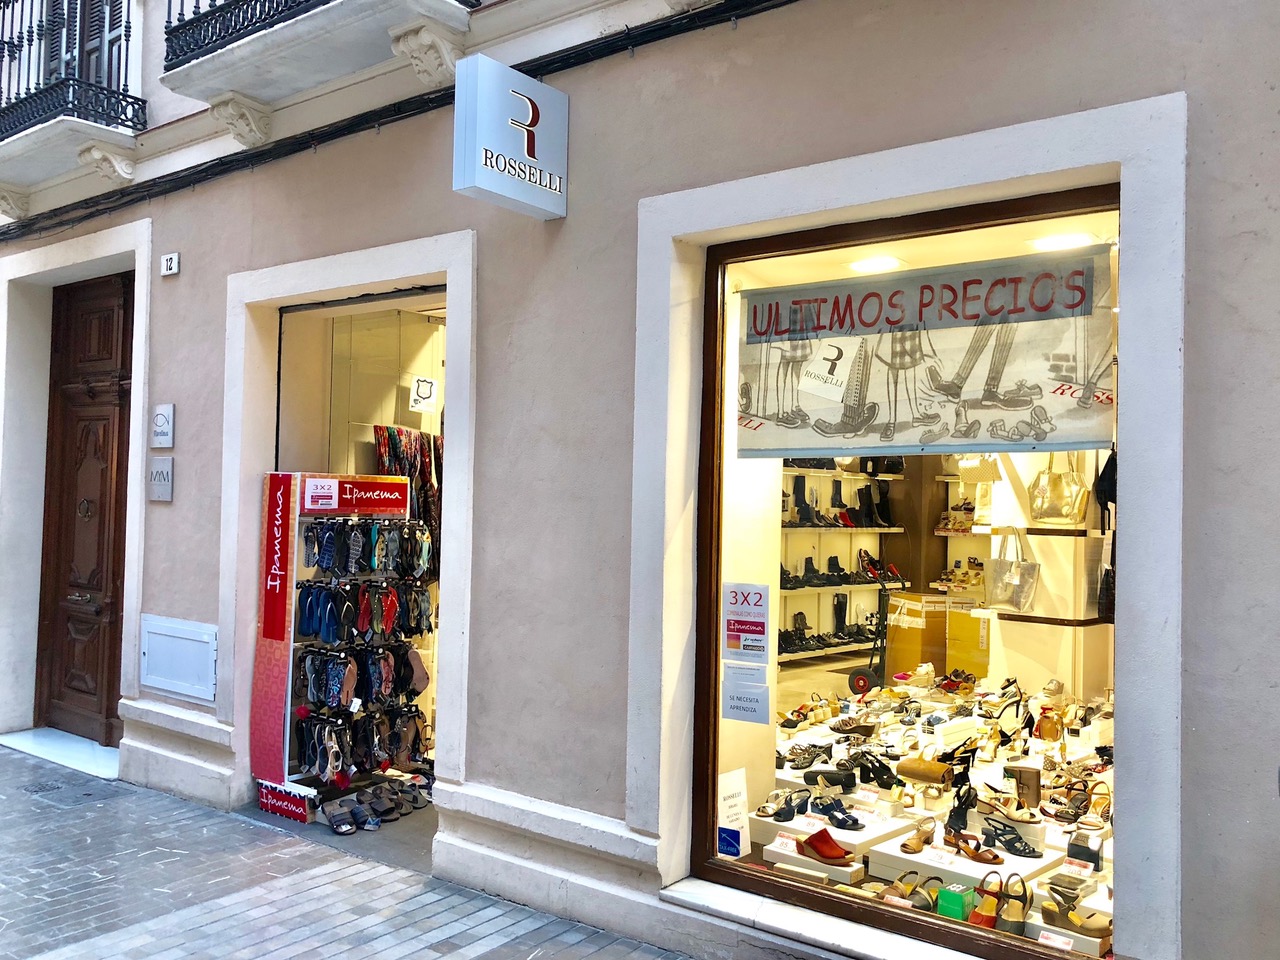 La marca de calzado Roselli abre nuevo local comercial cerca de la Alcazaba malagueña